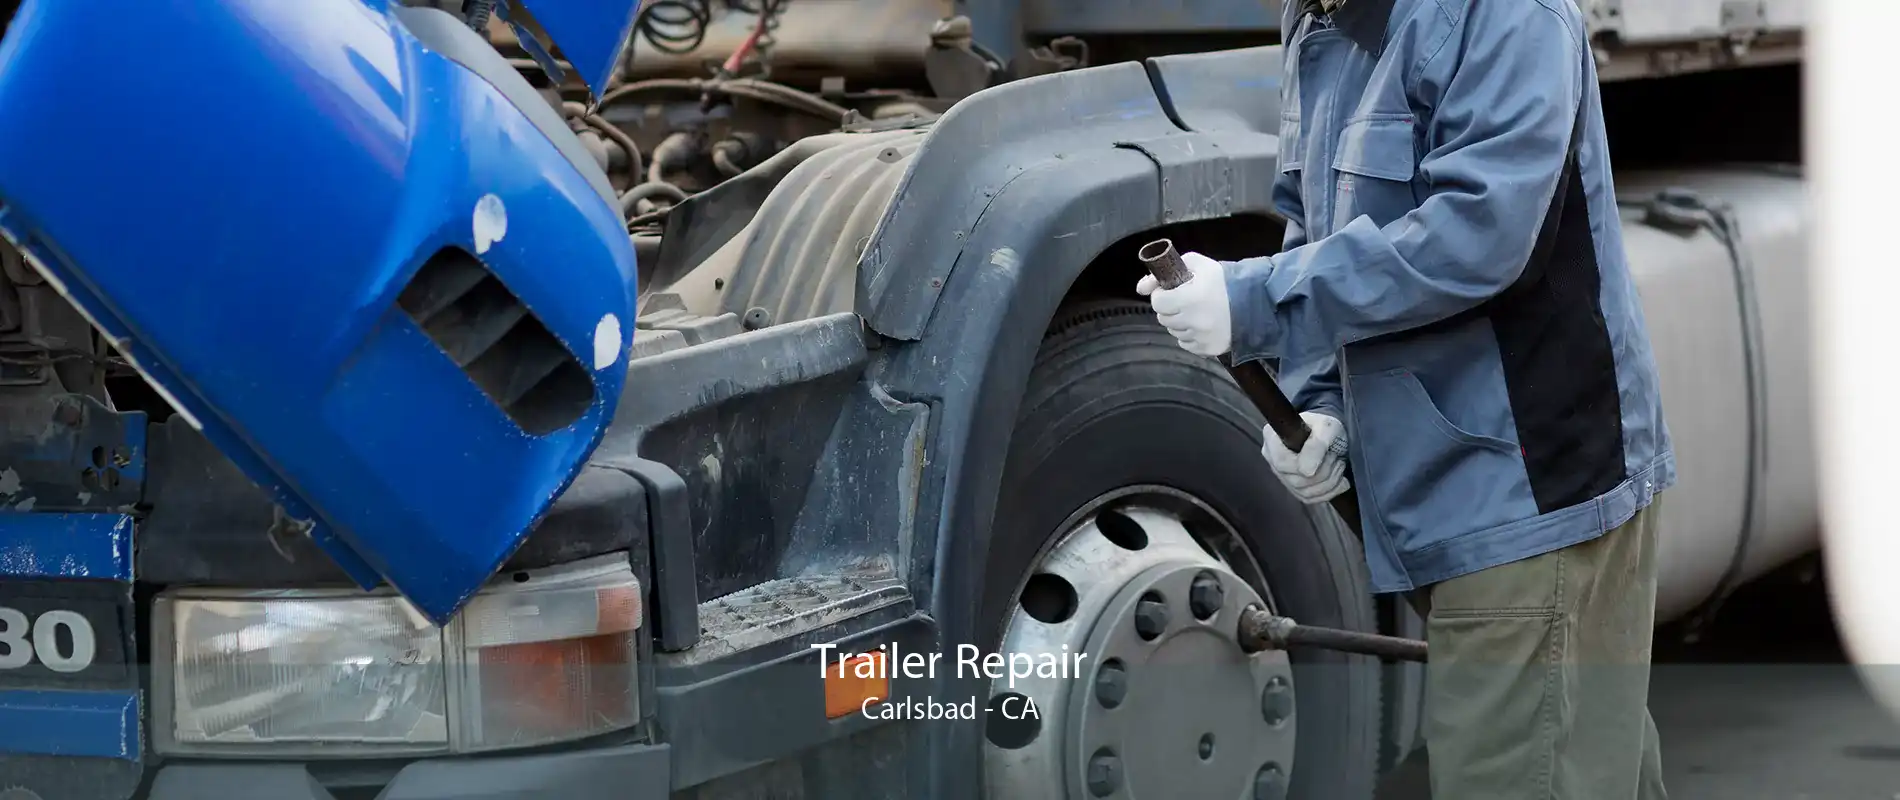 Trailer Repair Carlsbad - CA